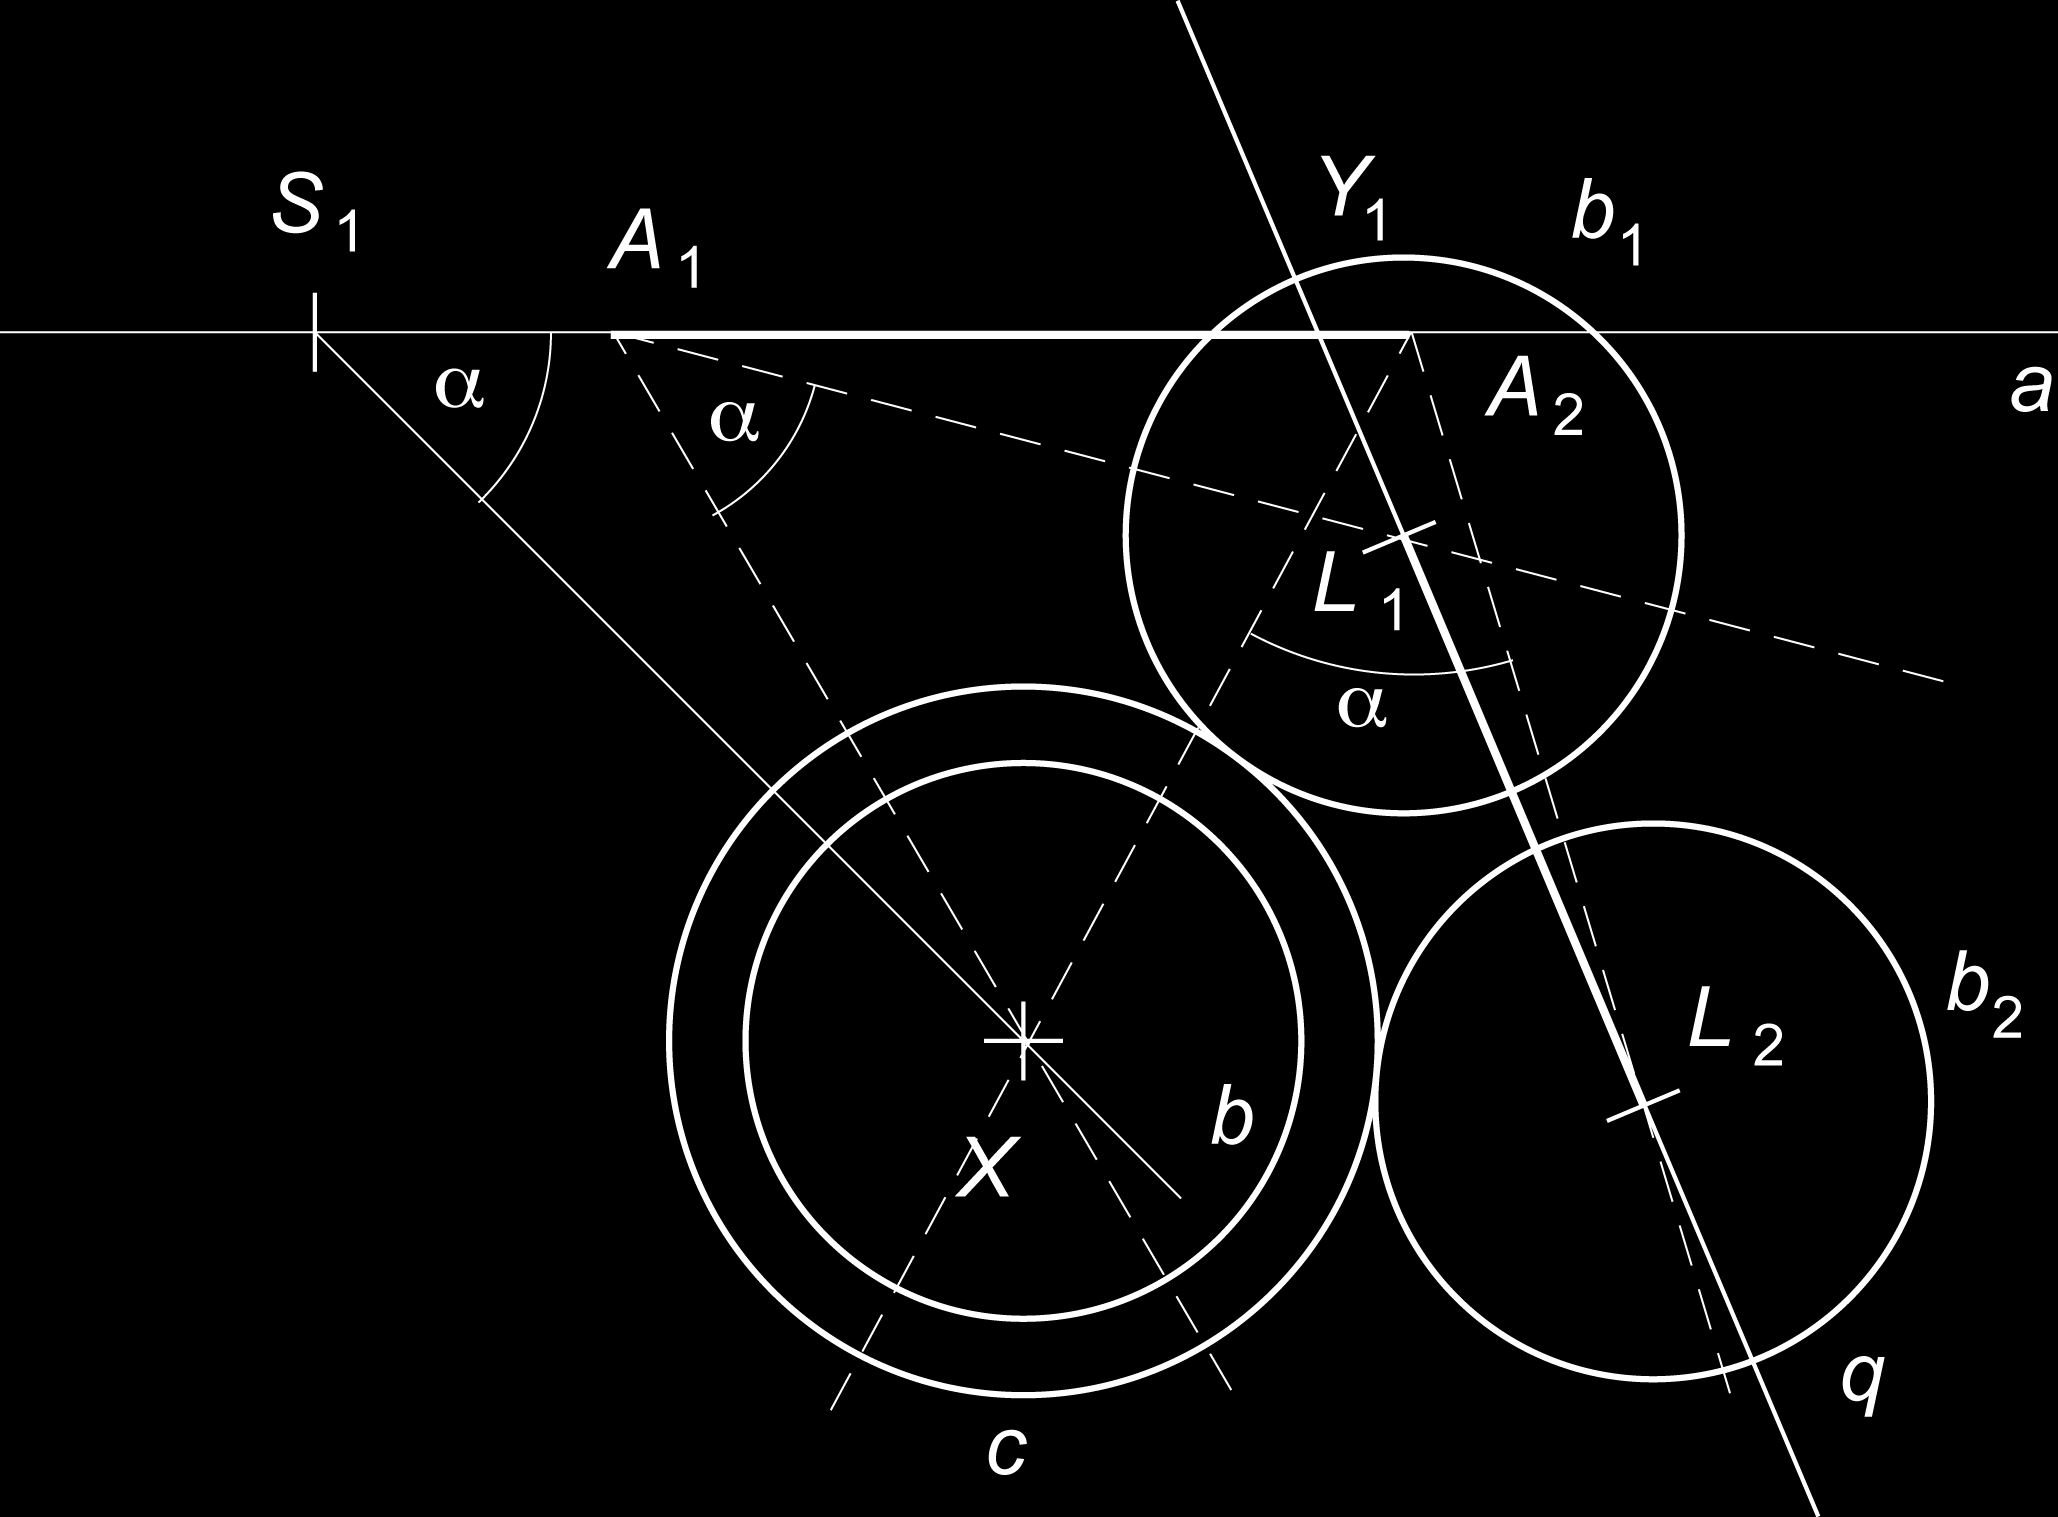 a r). Odtud už bezprostředně vyplyne, že trojúhelníky S 1 S 2 S 4 a Y 1 Y 2 Y 4 jsou podobné, protože koeficient k podobnosti je poměr délek základny a ramena rovnoramenného trojúhelníku s vnitřním